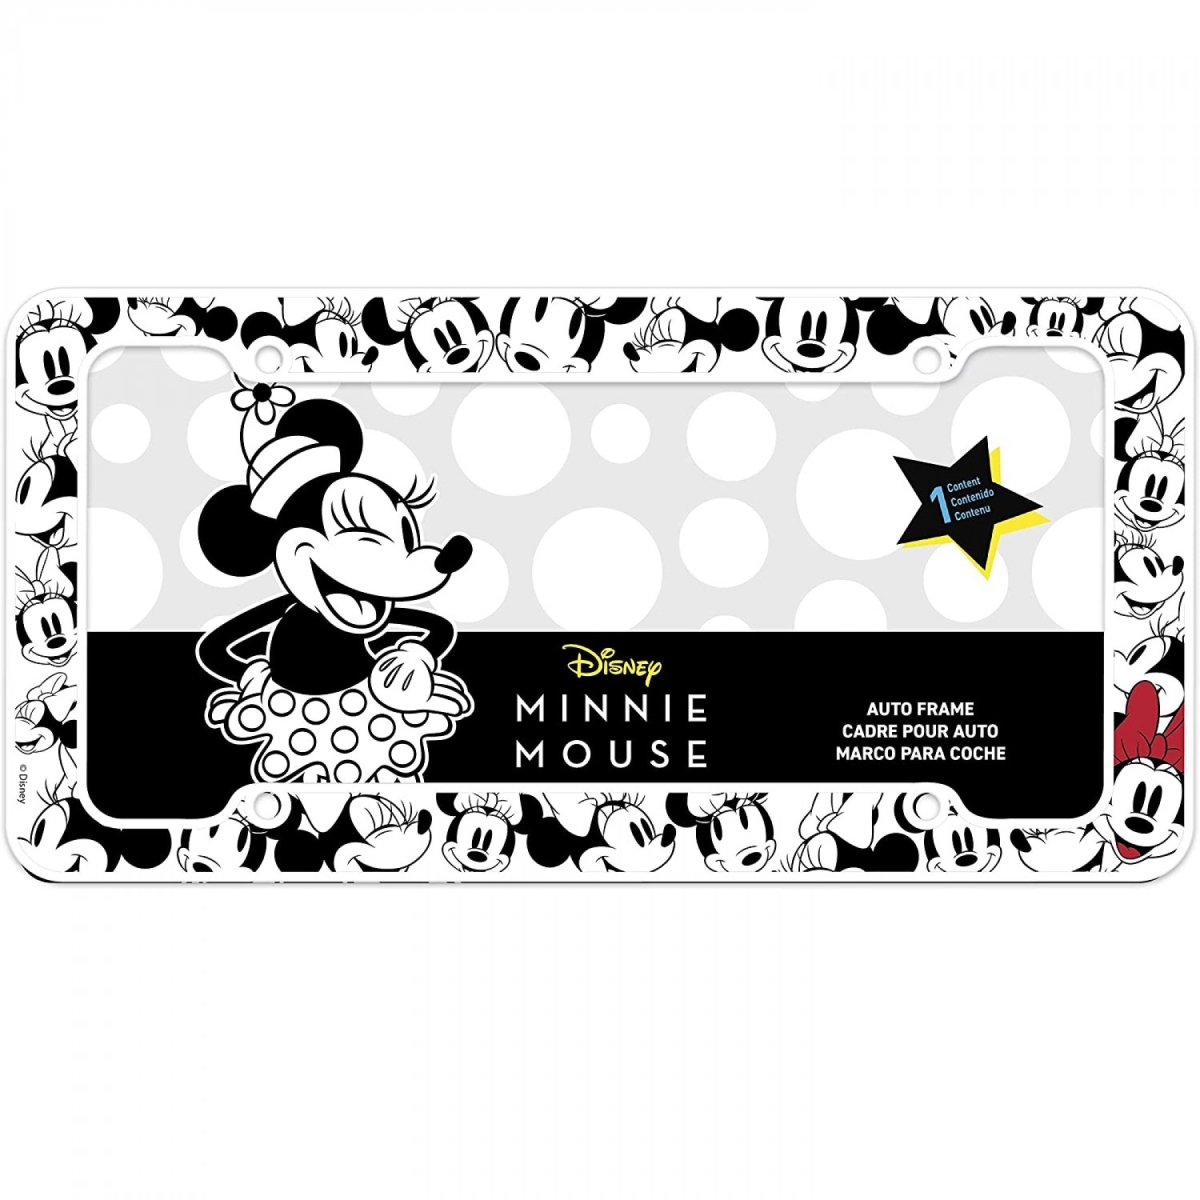 Disney Minnie Mouse License Plate Frame, Black & White -  Grandes Travesuras, GR1815495